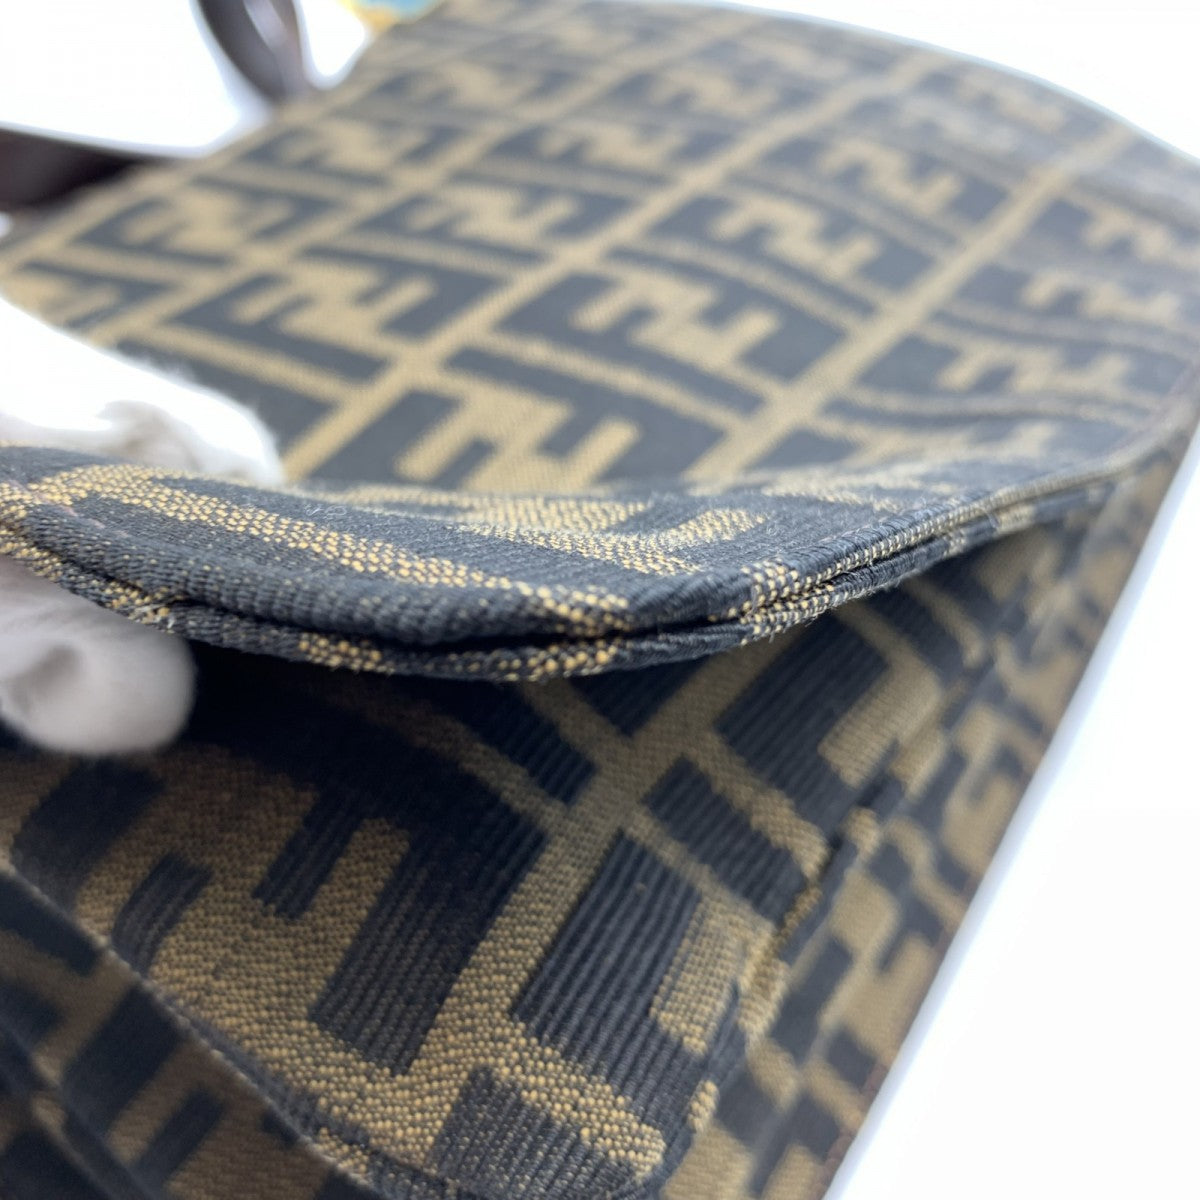 Zucca Canvas Handbag